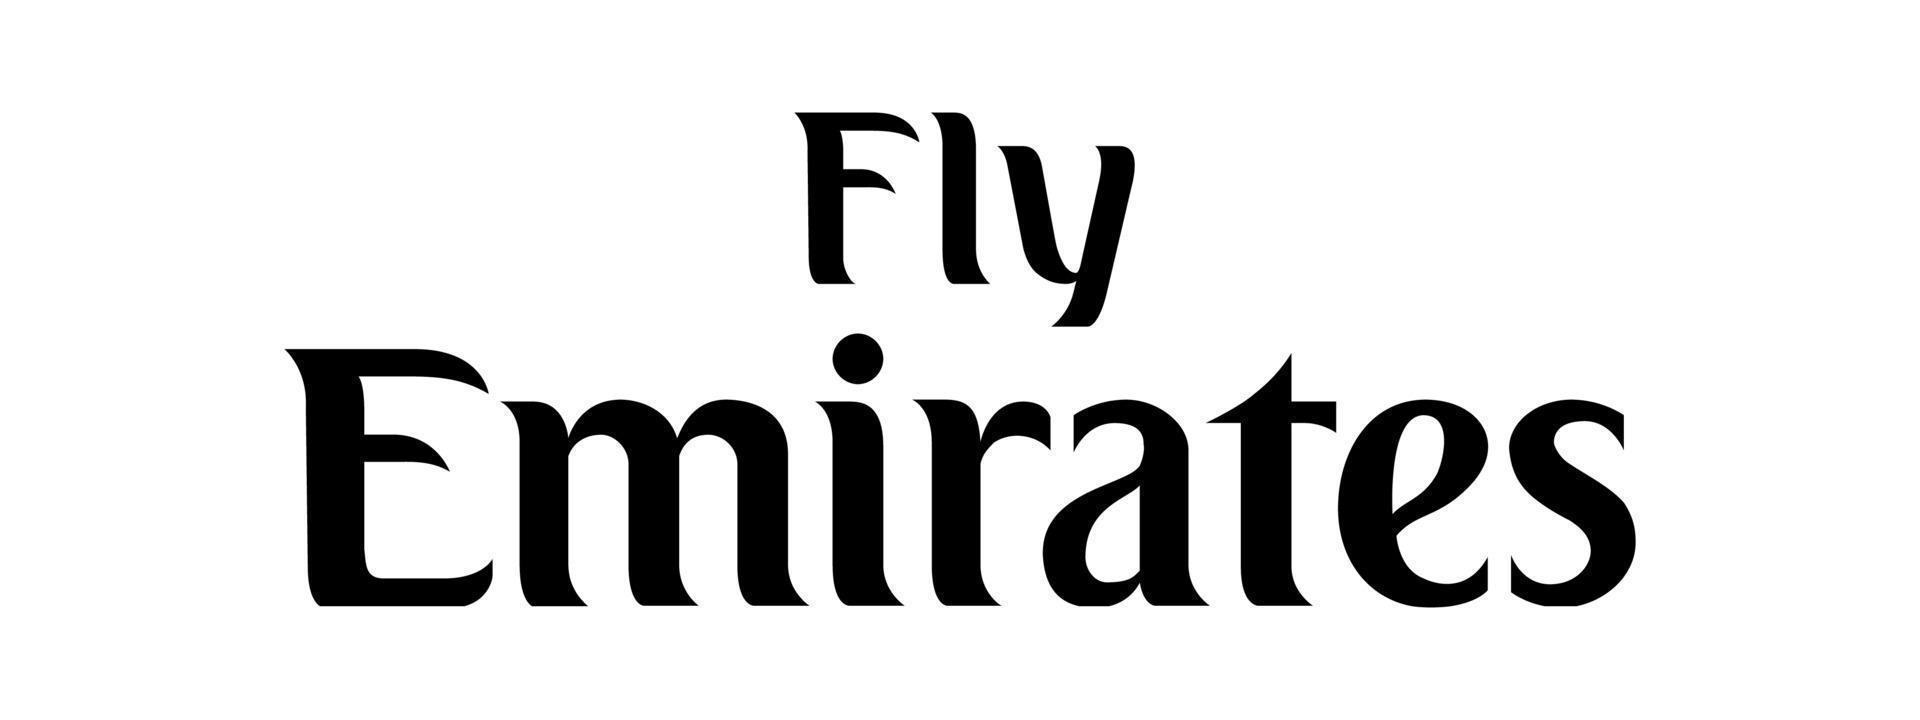 Fly Emirates-Logo auf transparentem Hintergrund vektor